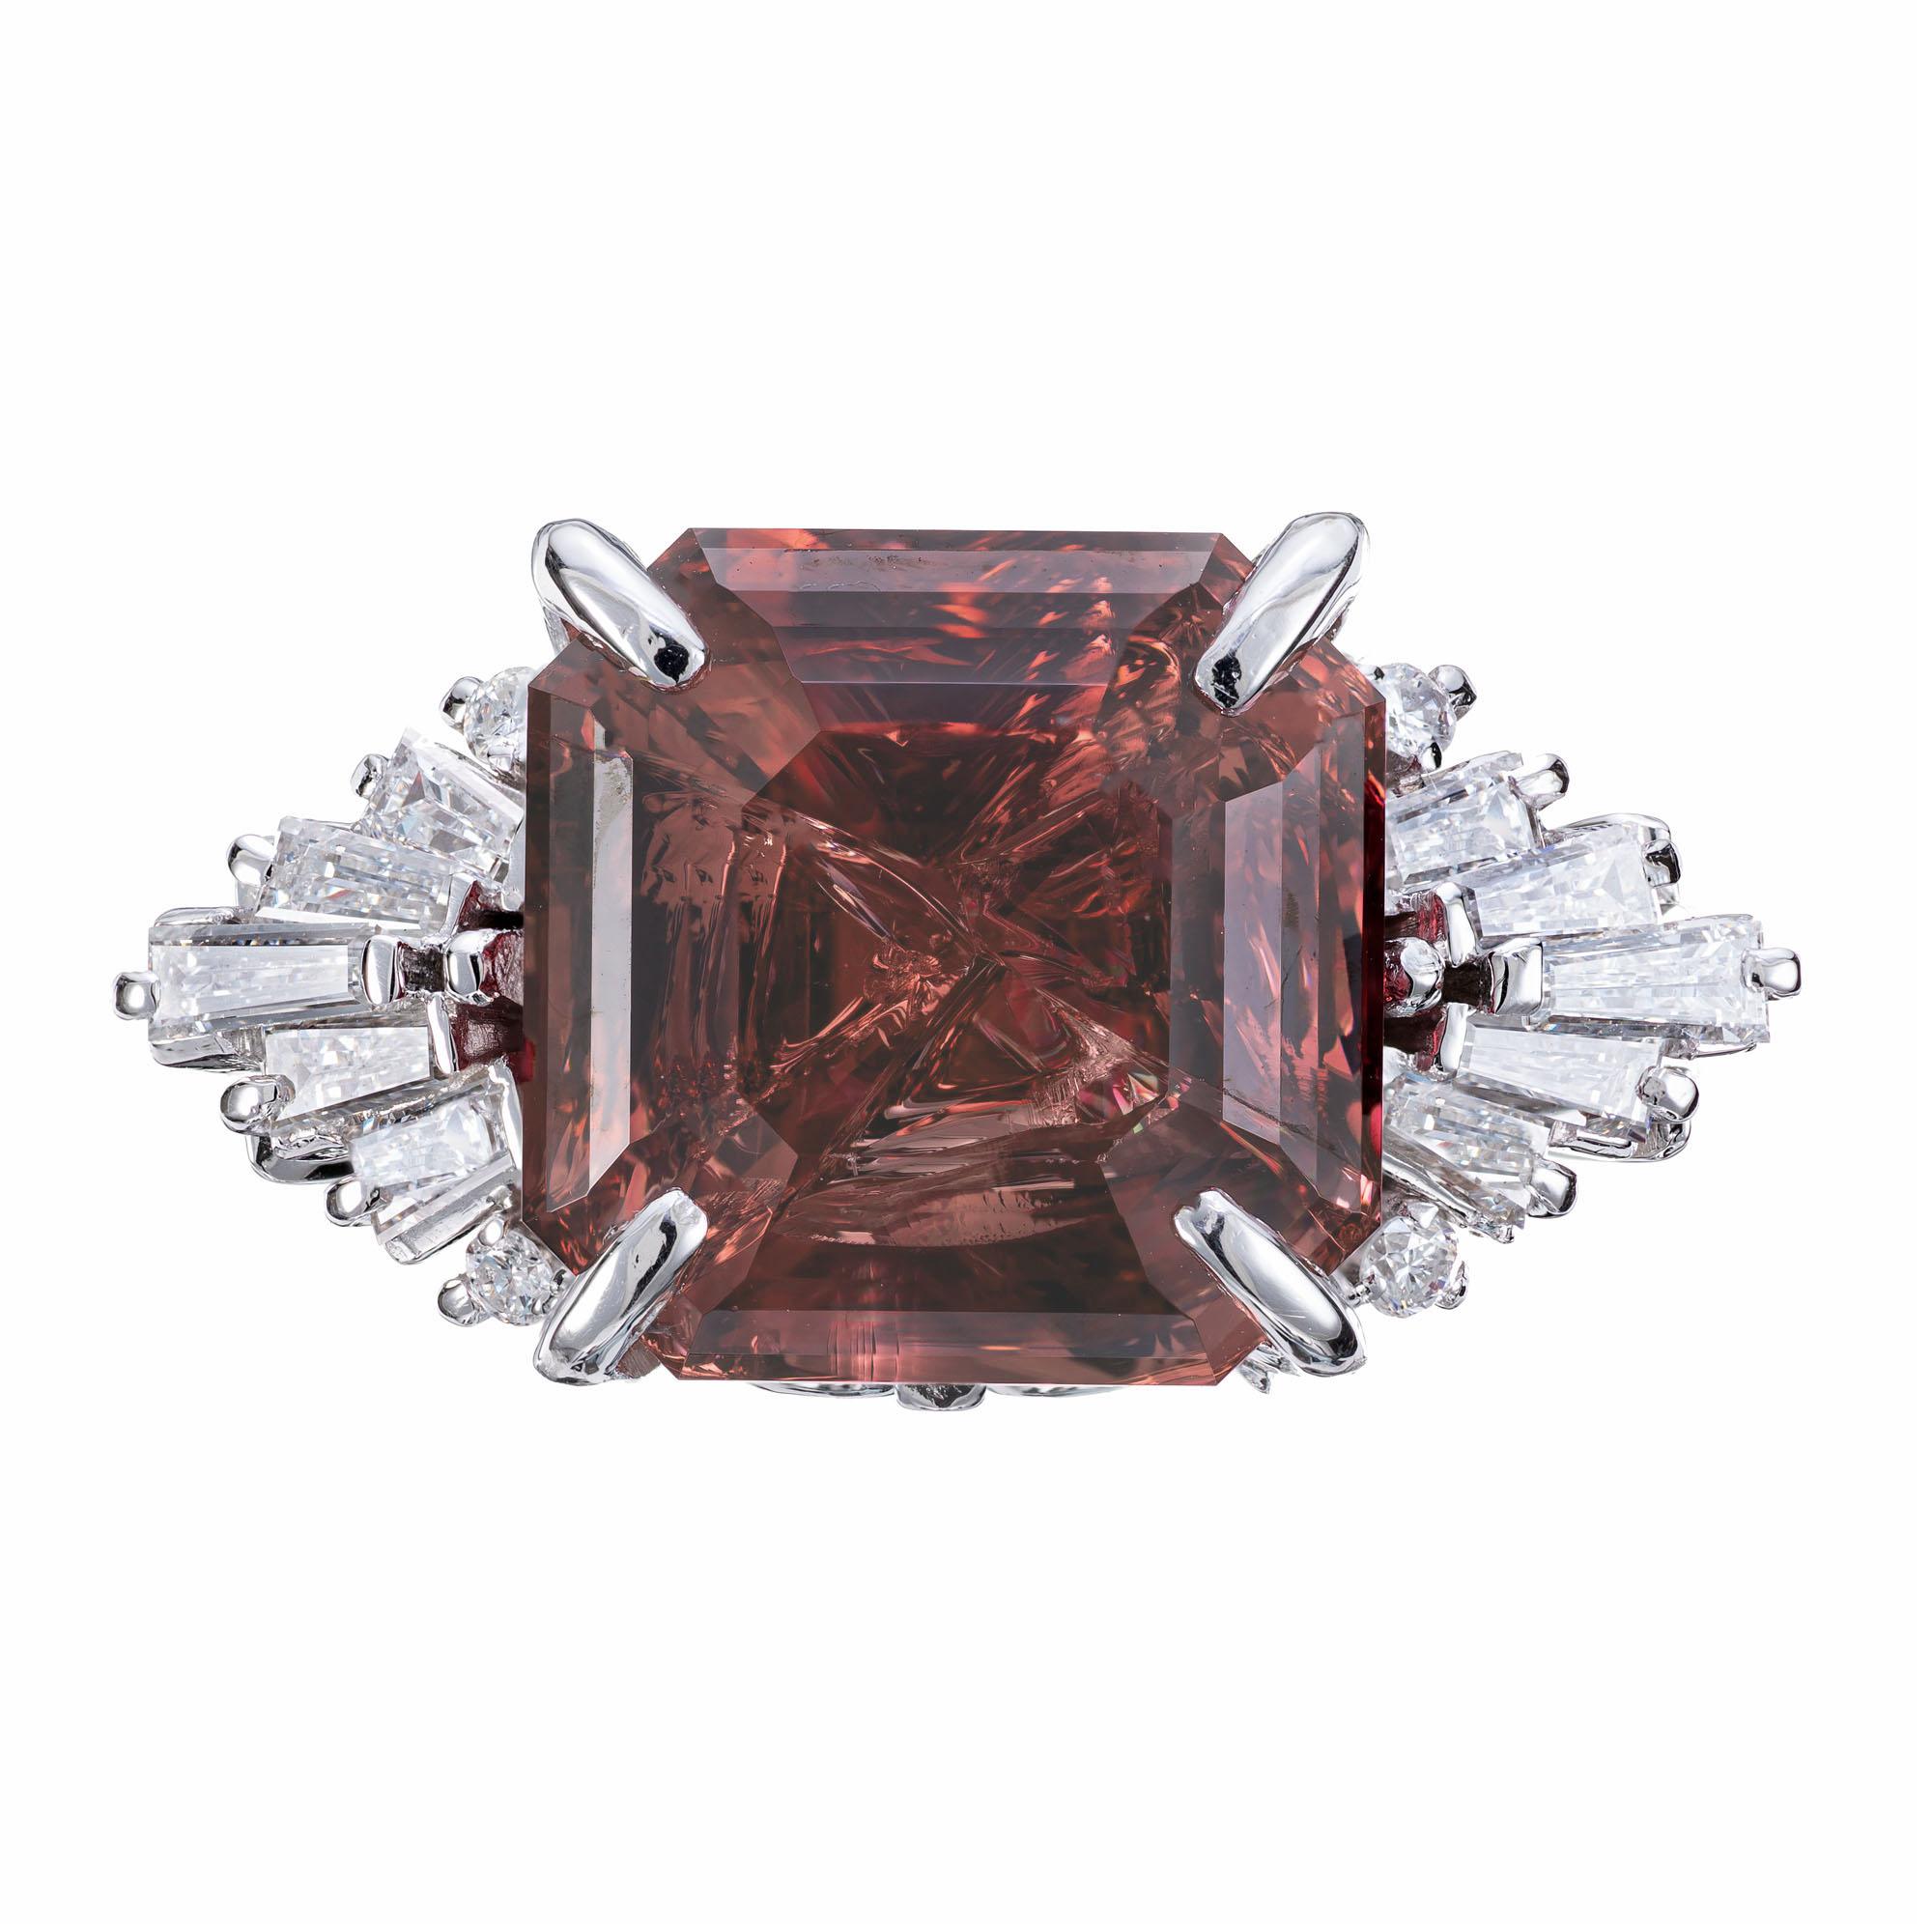 Verlobungsring mit Granat und Diamant. AGL-zertifizierter 10,99ct brauner orange/rosa, natürlicher Granat als Mittelstein, gefasst in einer Platinfassung mit spitz zulaufenden Baguette- und runden Vollschliff-Diamanten als Akzente. Der Granat weist